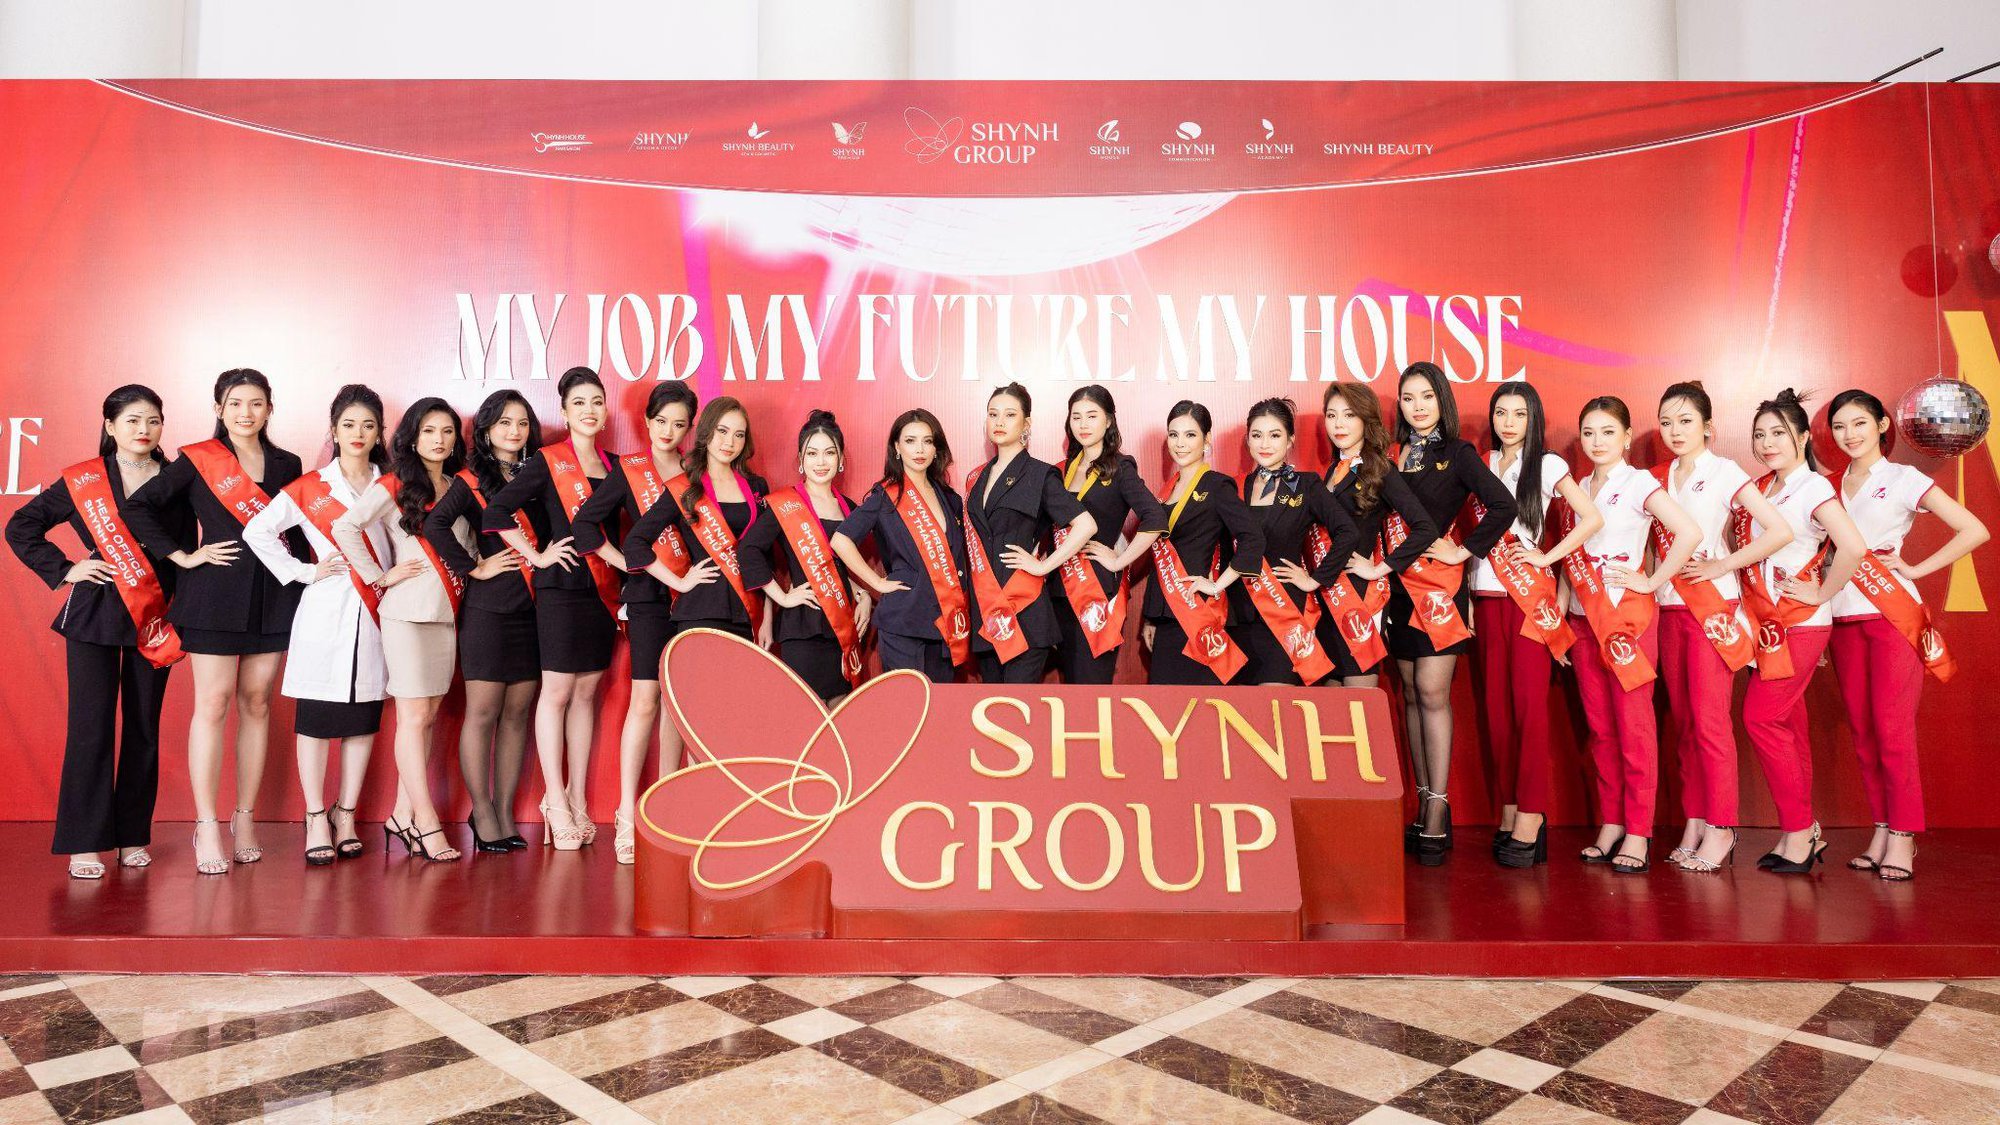 Shynh Group tổ chức tiệc tân niên, kỷ niệm gần 1 thập kỷ hình thành và phát triển - ảnh 6